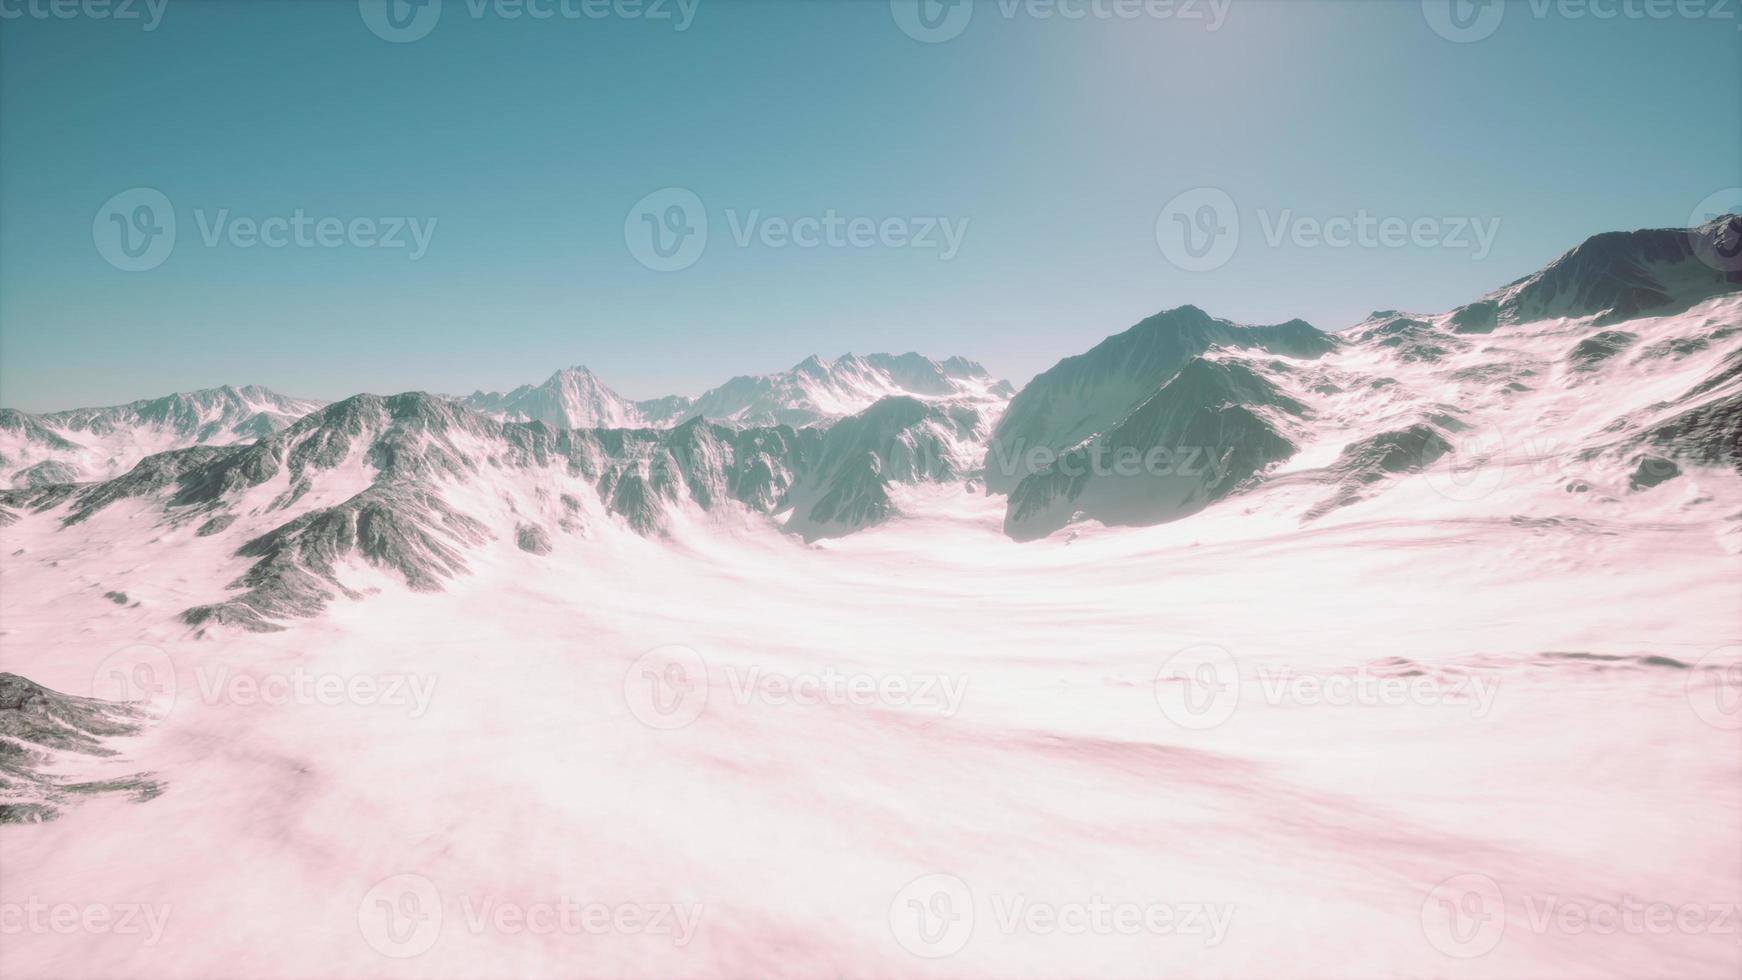 vista panoramica sulle montagne di cime innevate e ghiacciai foto